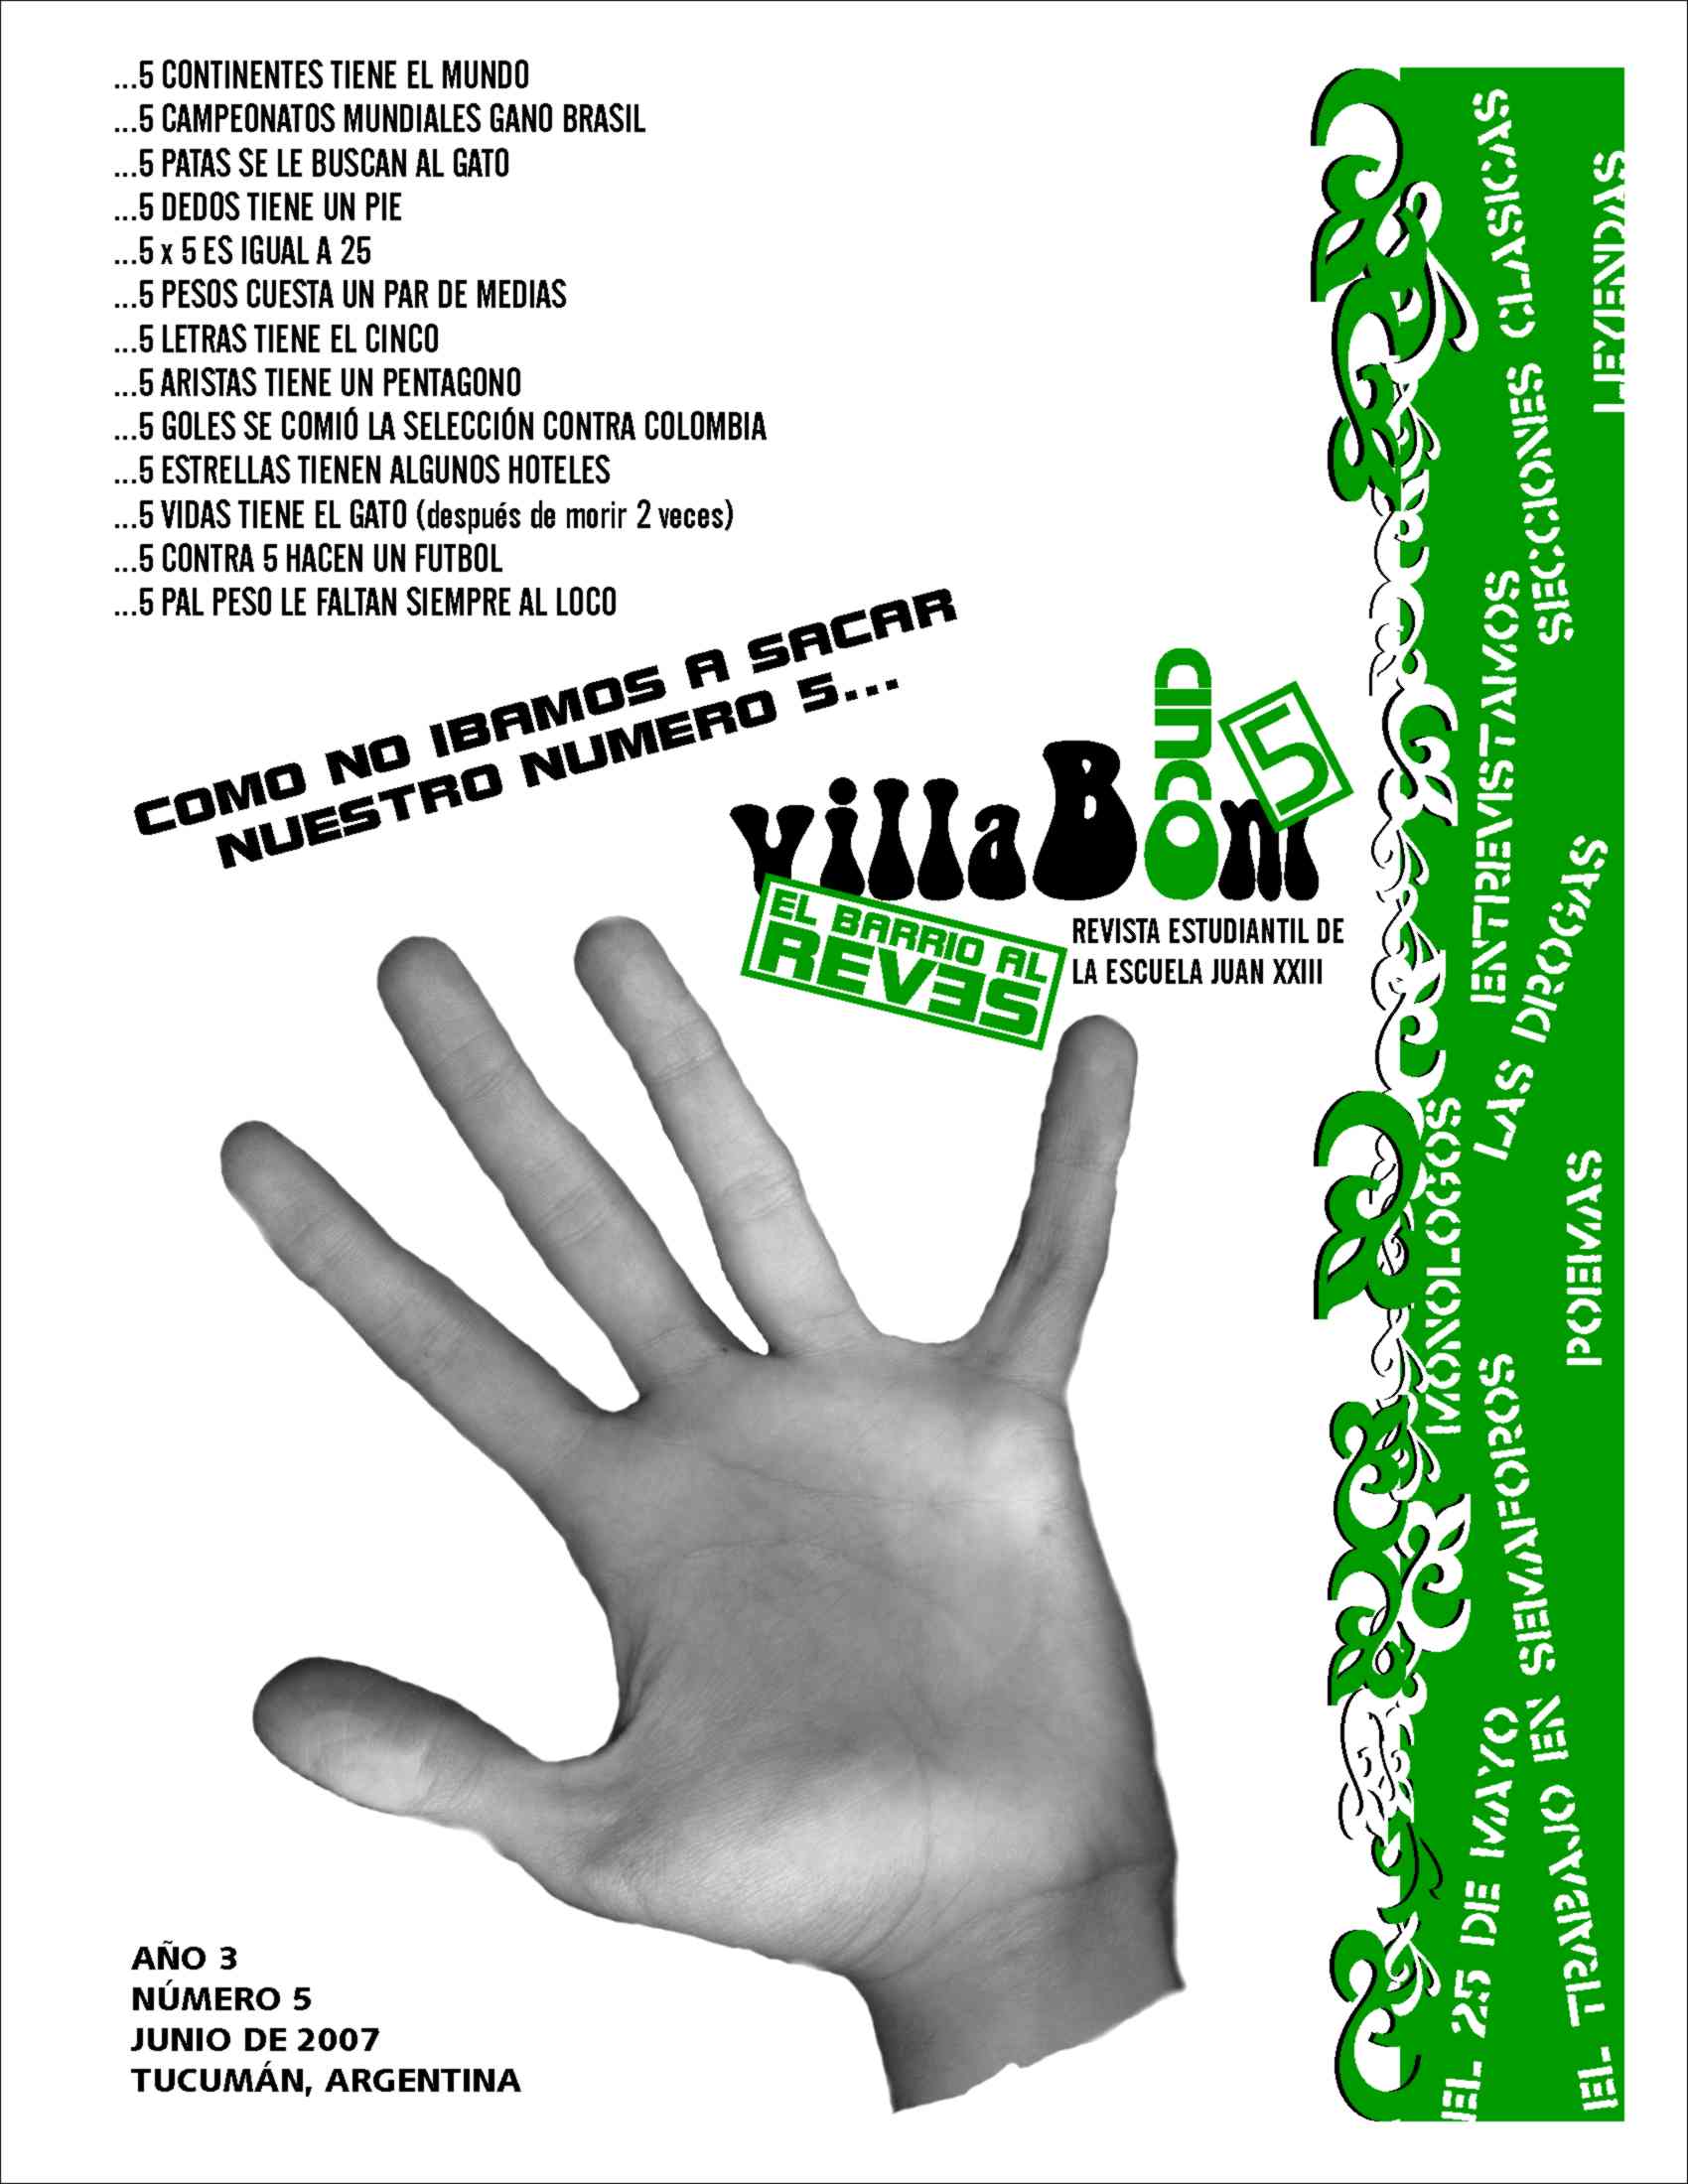 Imagen Tapa Revista VillaBom, año 3, n°5, 2007